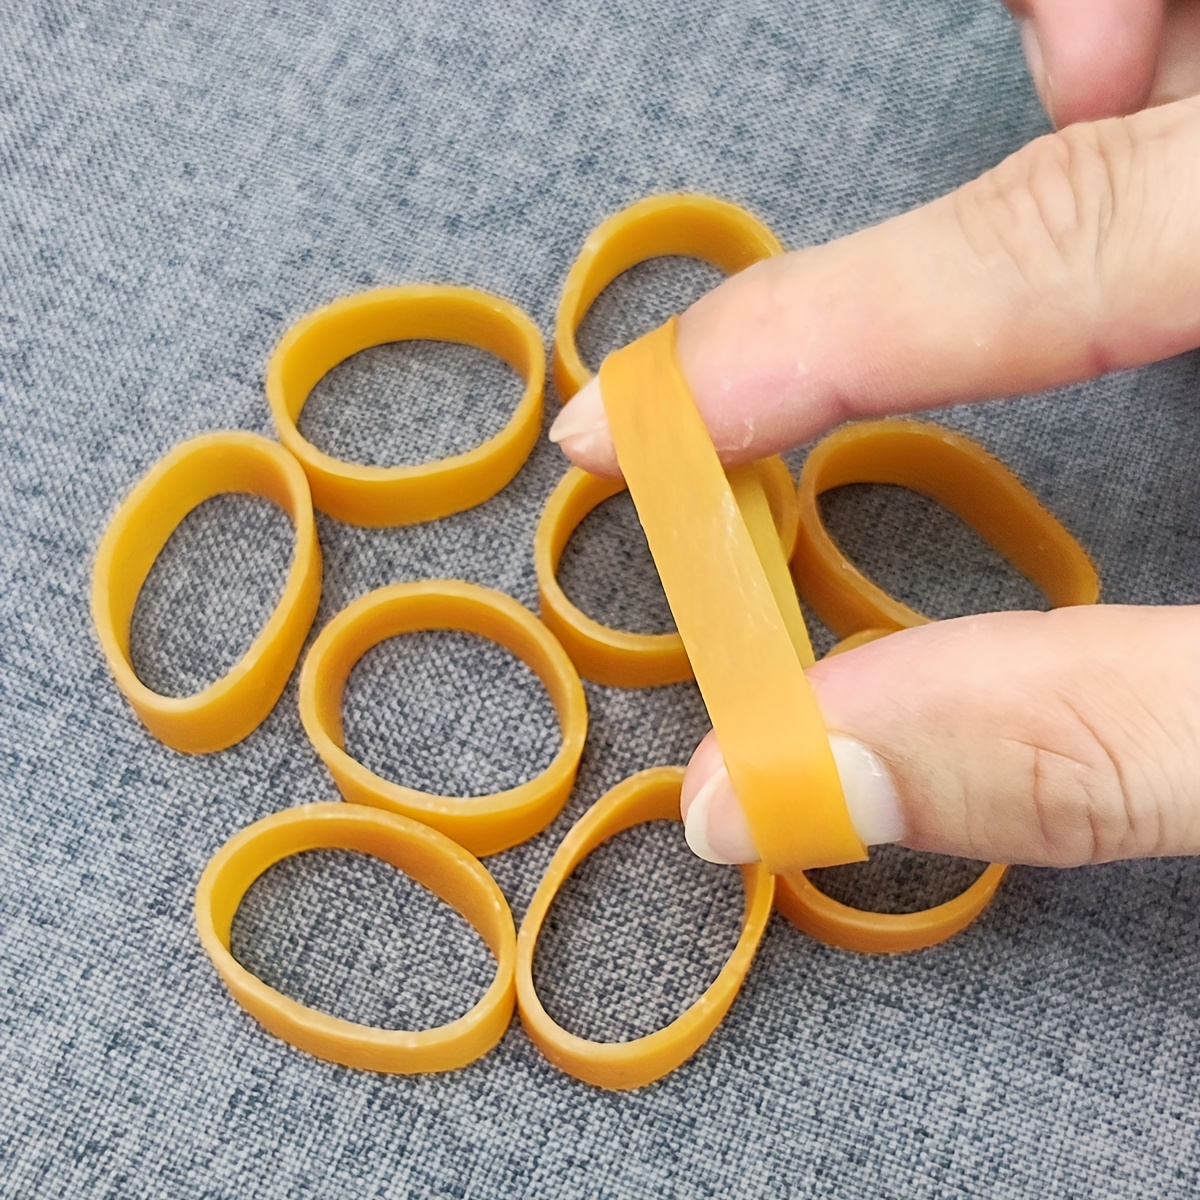  YXSLC banda de goma elástica bandas de goma sujetadores bandas  elásticas utilizadas para oficina escuela suministros de papelería  estirables resistentes bandas elásticas de goma gran flexibilidad y buena  fijación : Productos